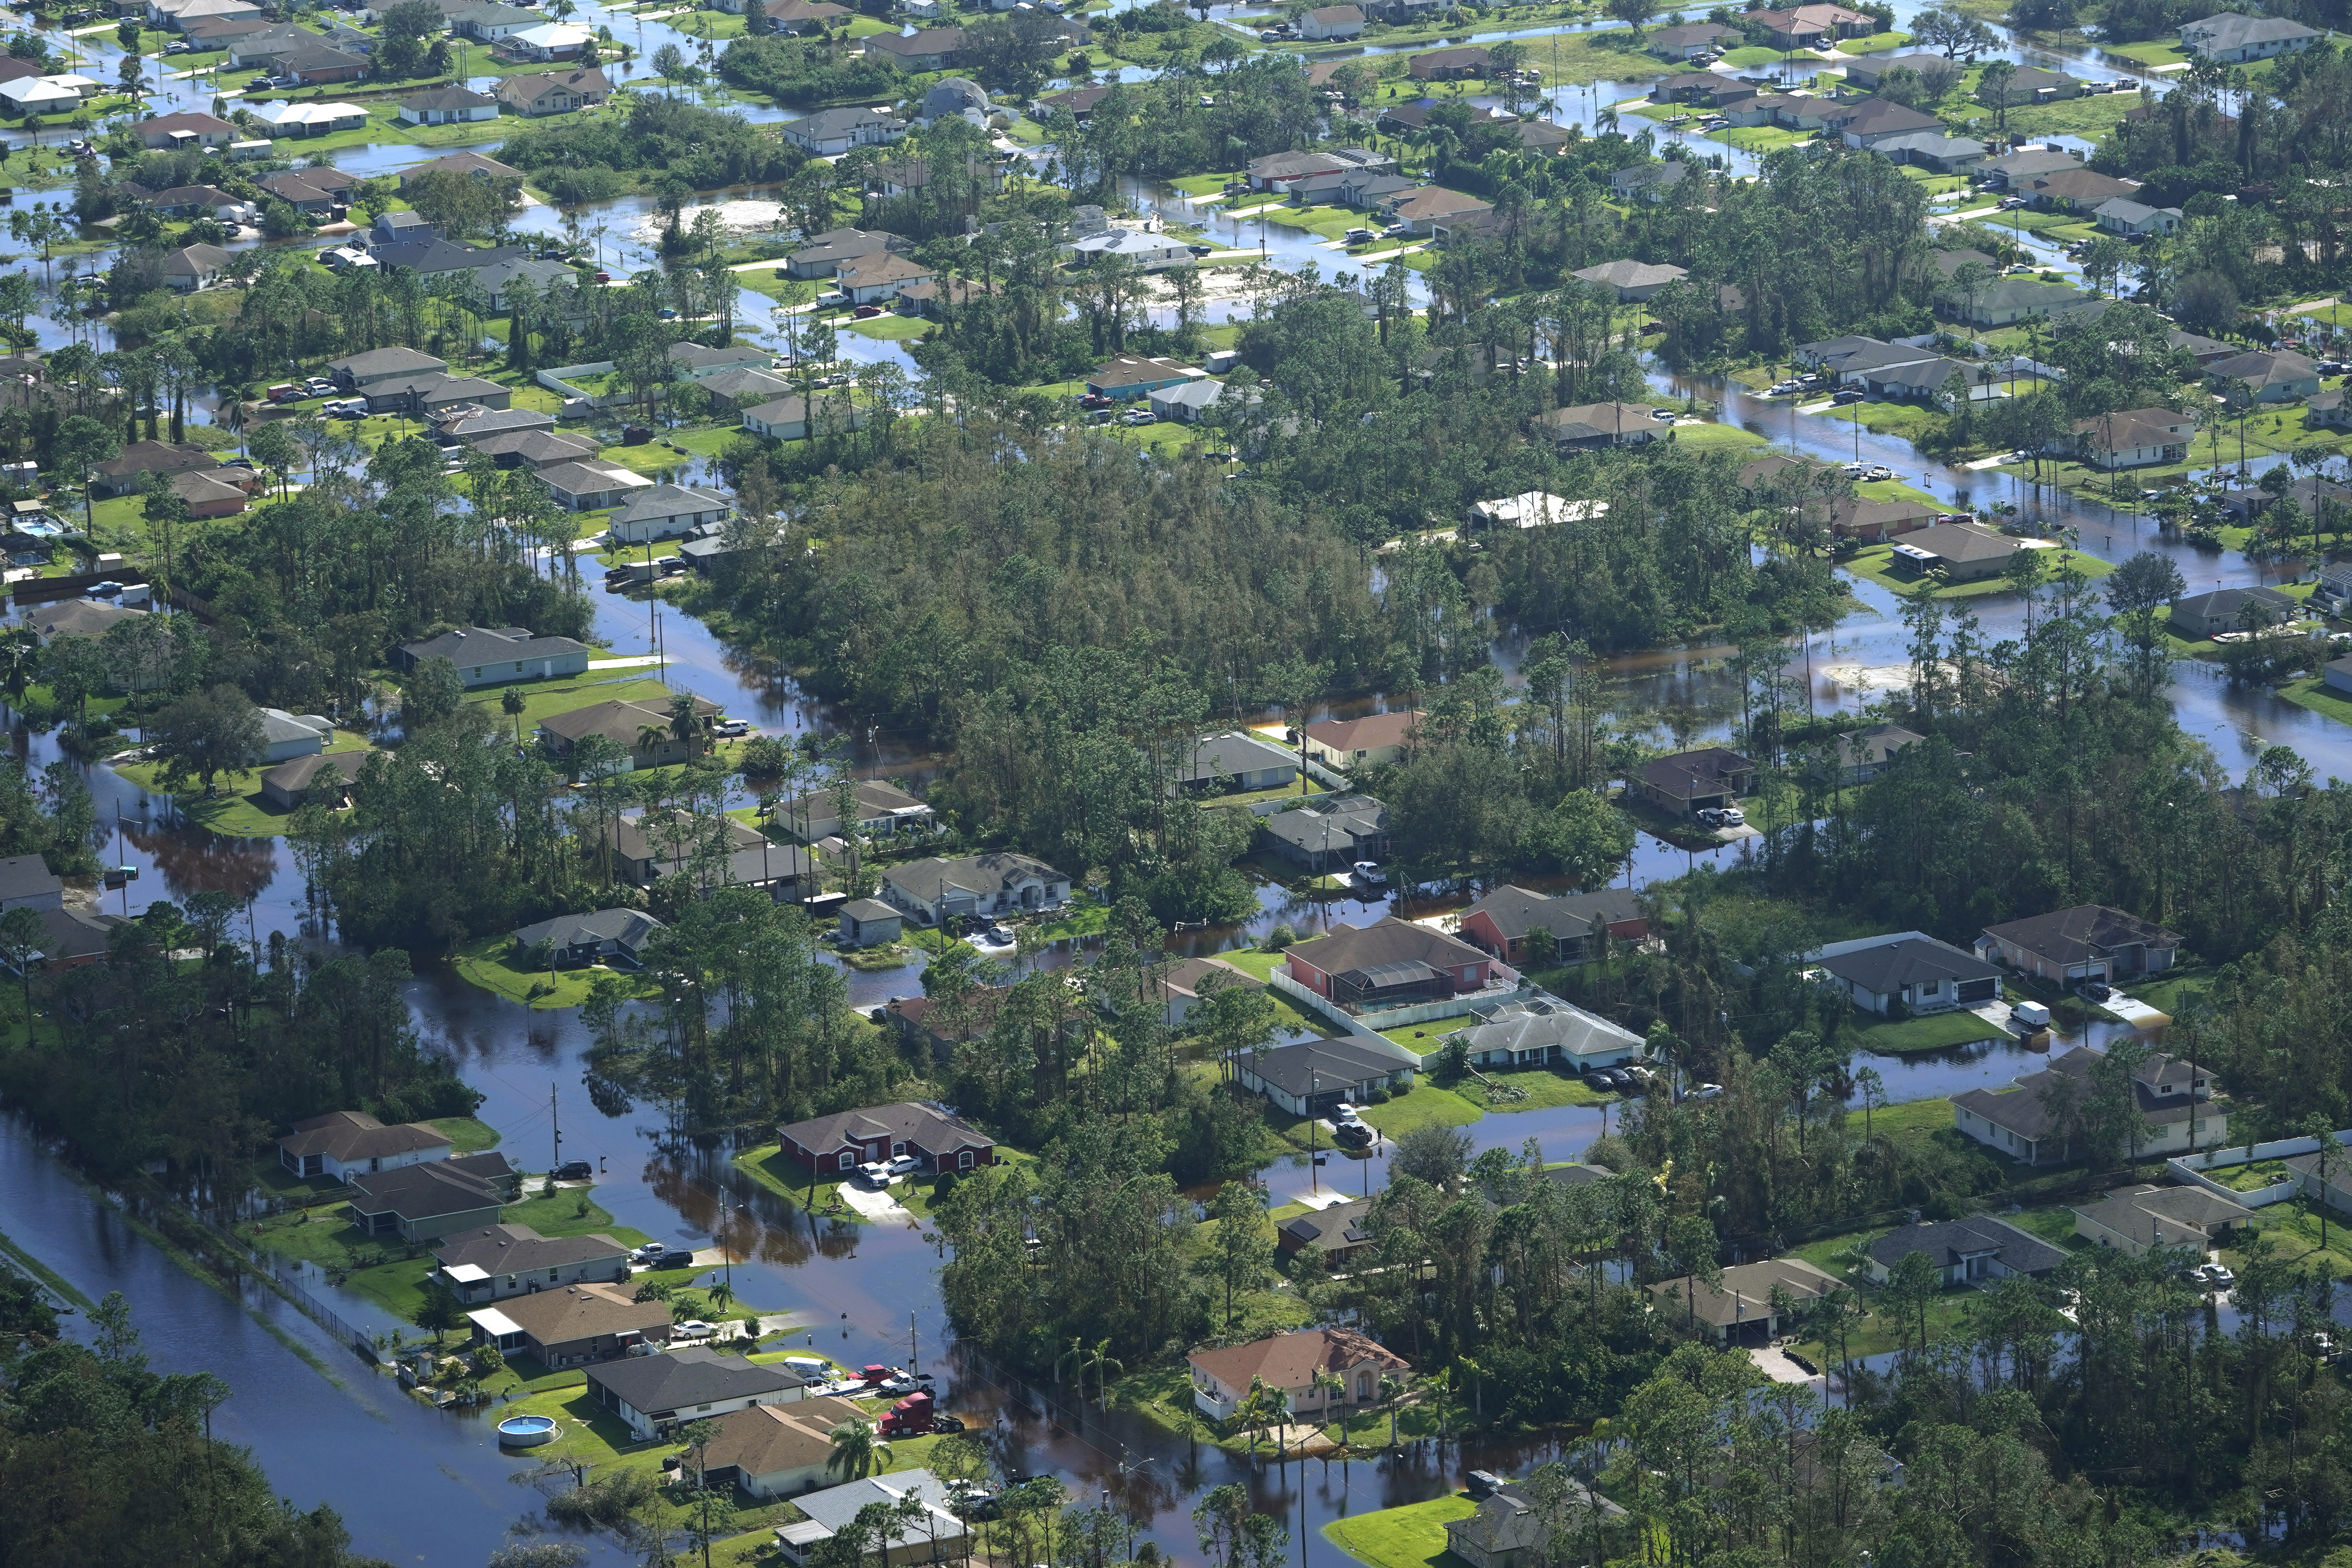 Inundaciones causadas por el huracán Ian, el jueves 29 de septiembre de 2022 en Fort Myers, Florida. El cambio climático agregó al menos un 10 % más de lluvia al huracán Ian, según muestra un estudio preparado inmediatamente después de la tormenta. (Foto AP/Marta Lavandier)